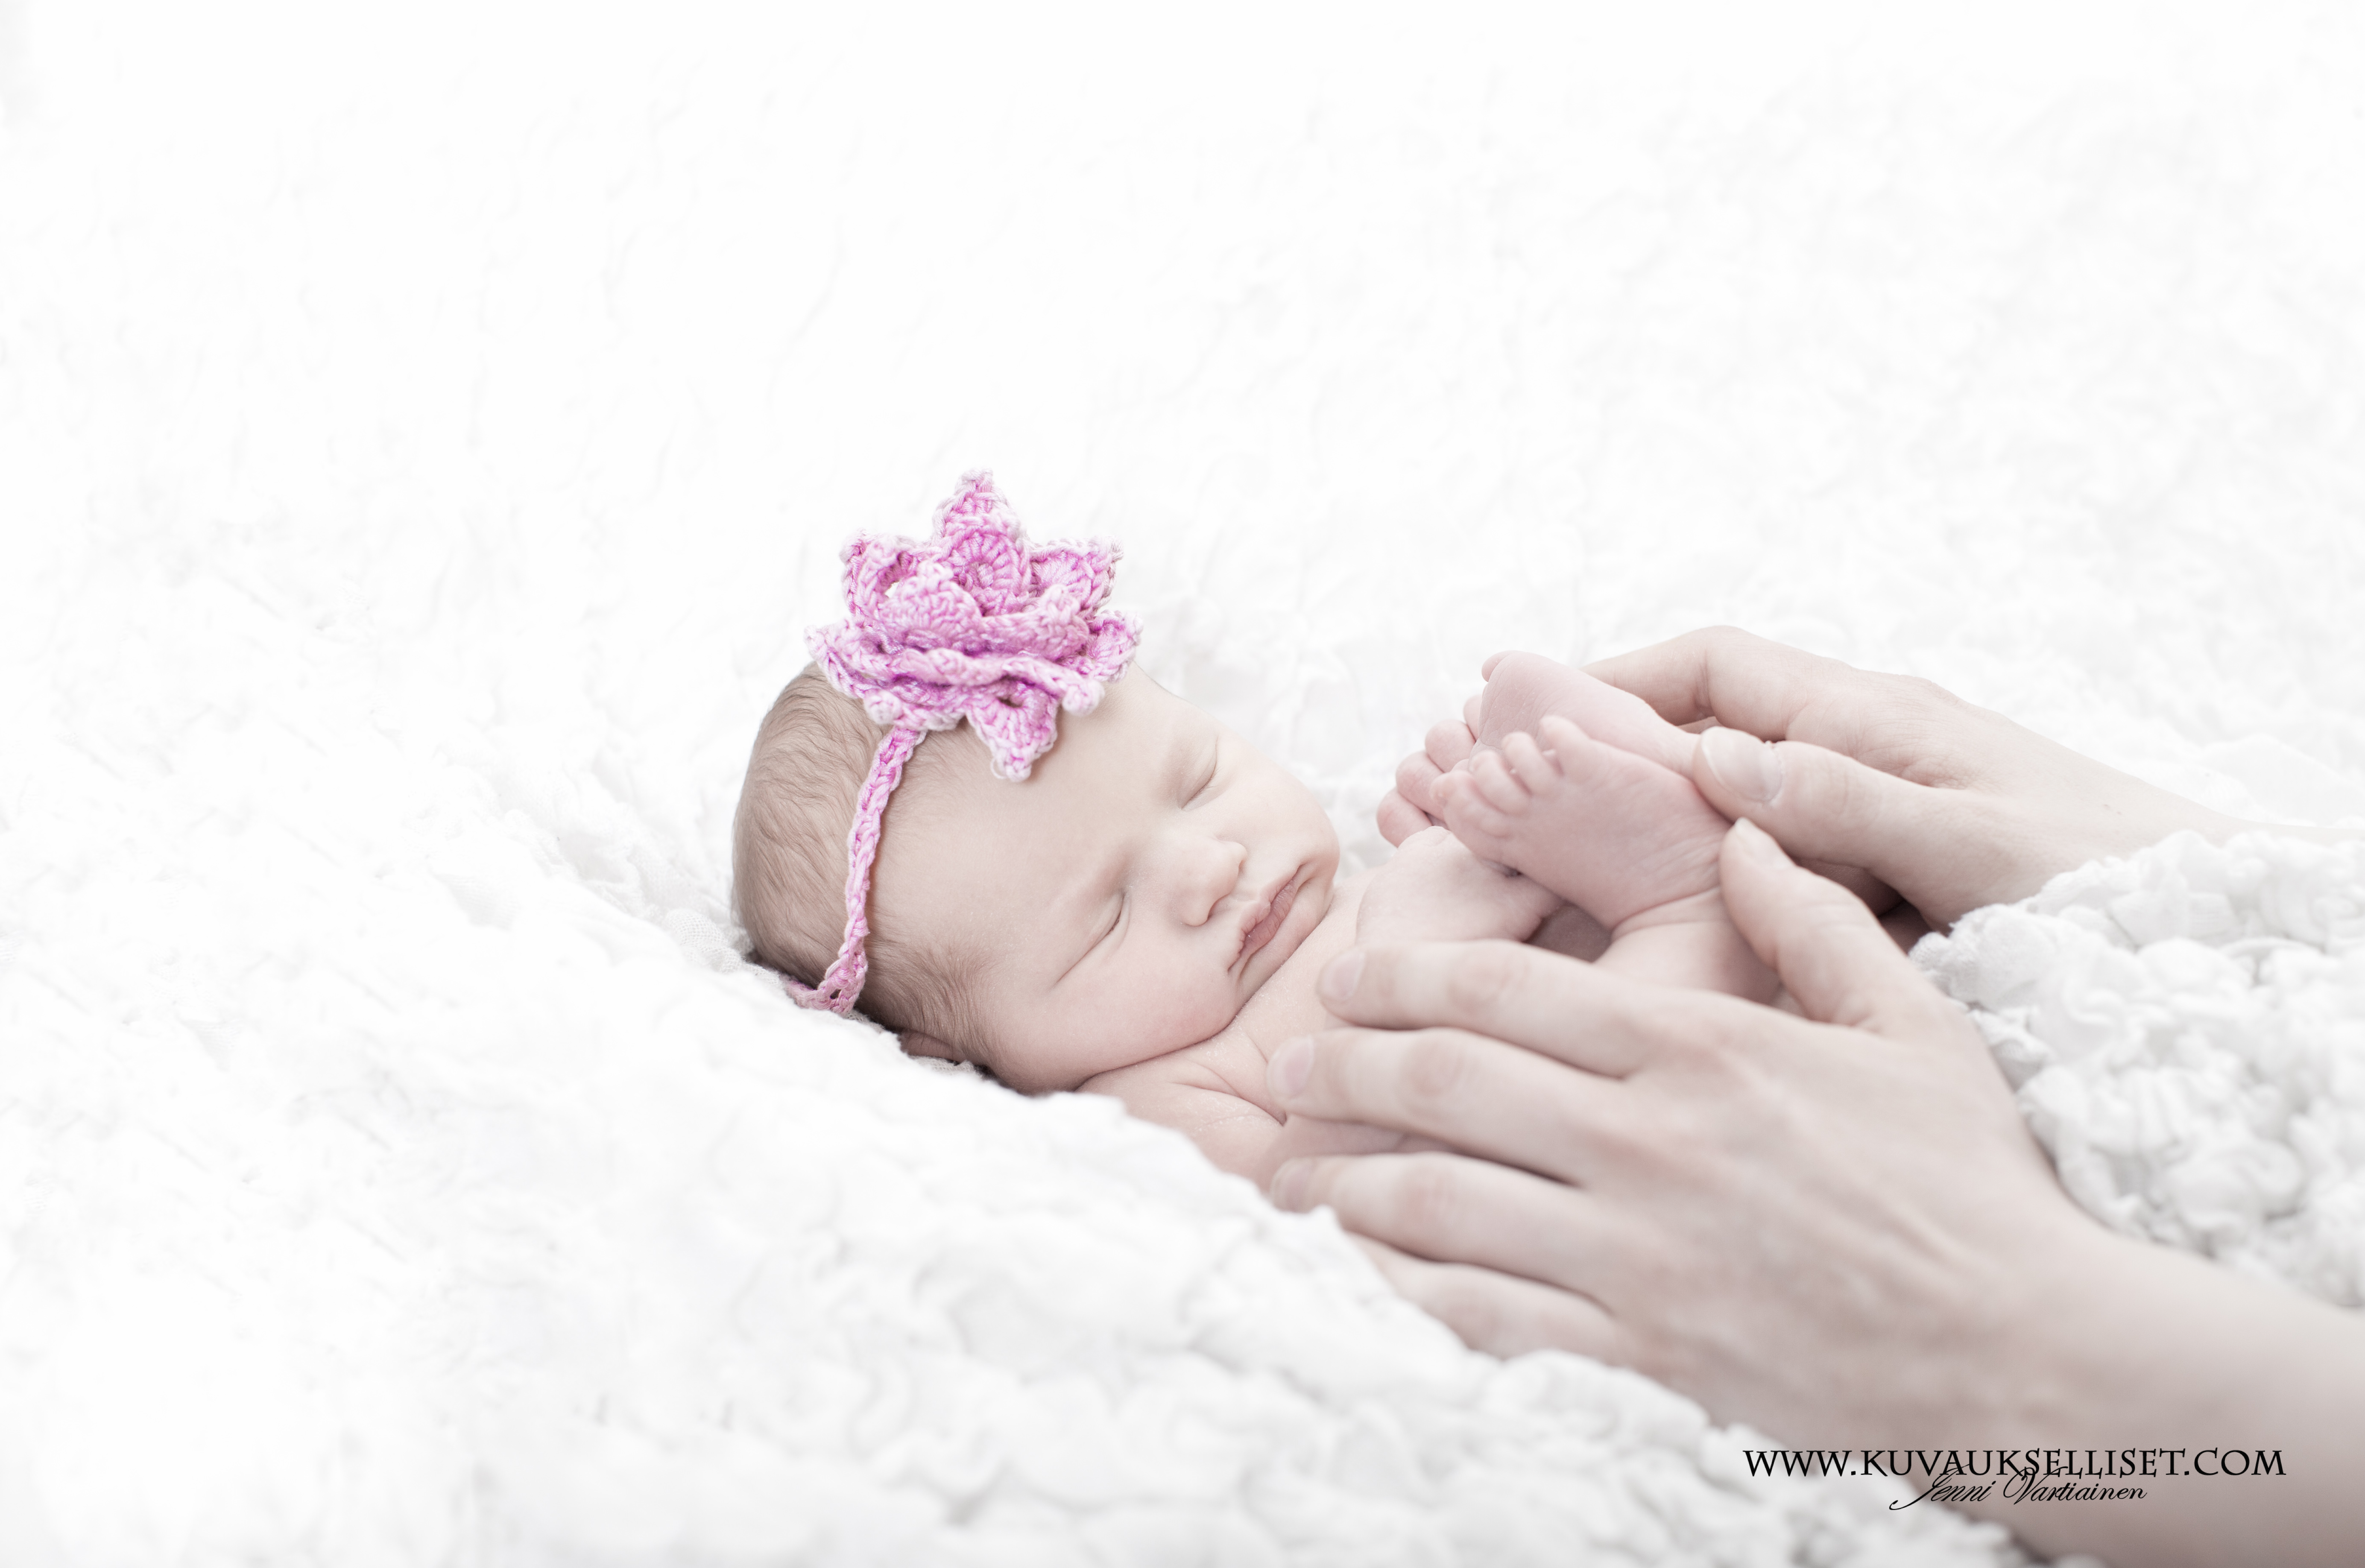 2014.4.8 vauvakuvaus vastasyntyneen kuvaus studiokuvaus 5